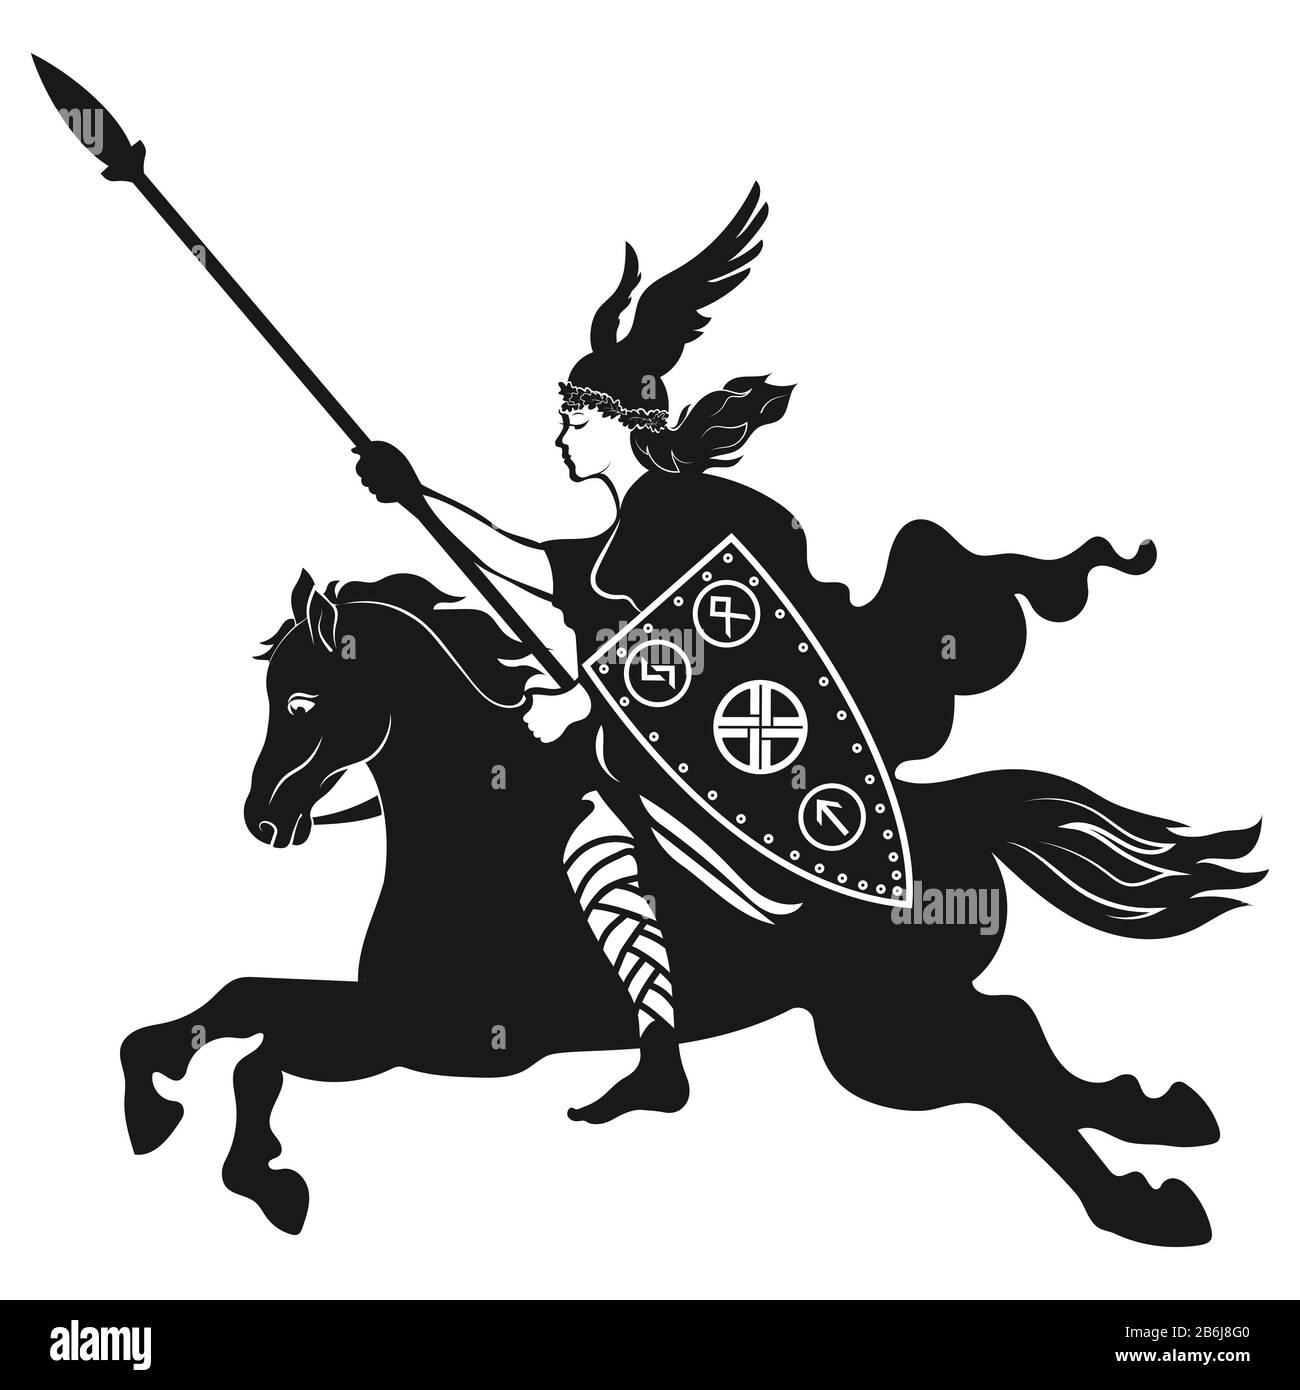 Design vichingo. Valkyrie su un cavallo di guerra, illustrazione della mitologia scandinava, disegnato in stile Art Nouveau Illustrazione Vettoriale